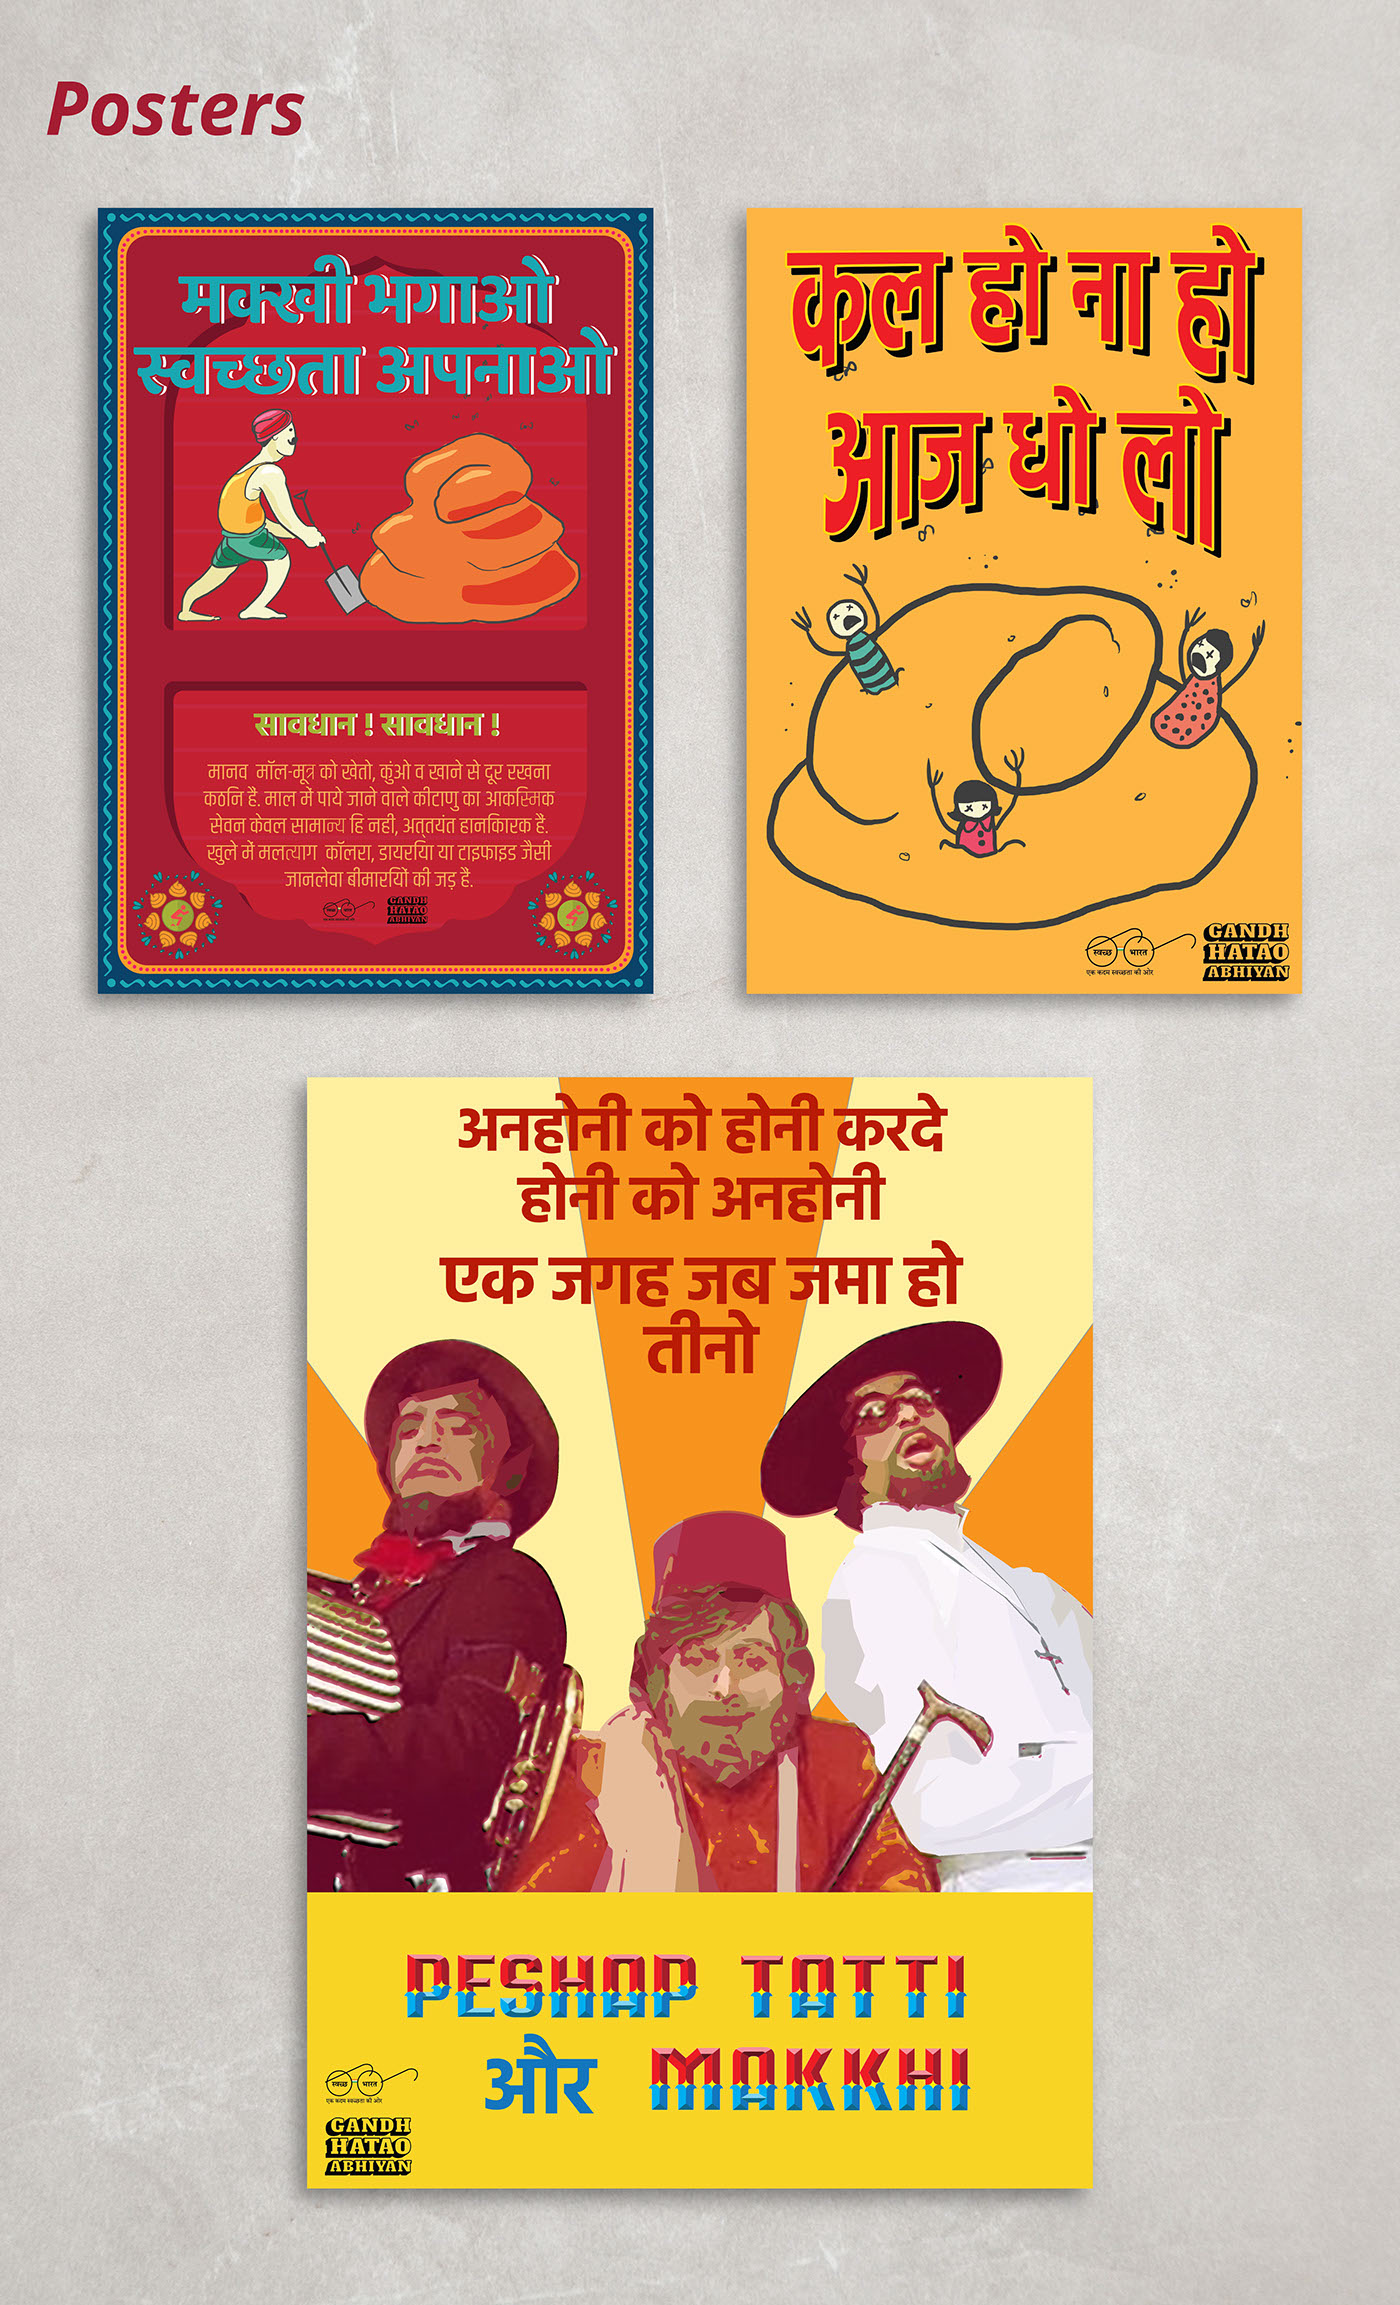 campaign rural India Against open defecation graphic design  Gorilla Tactics